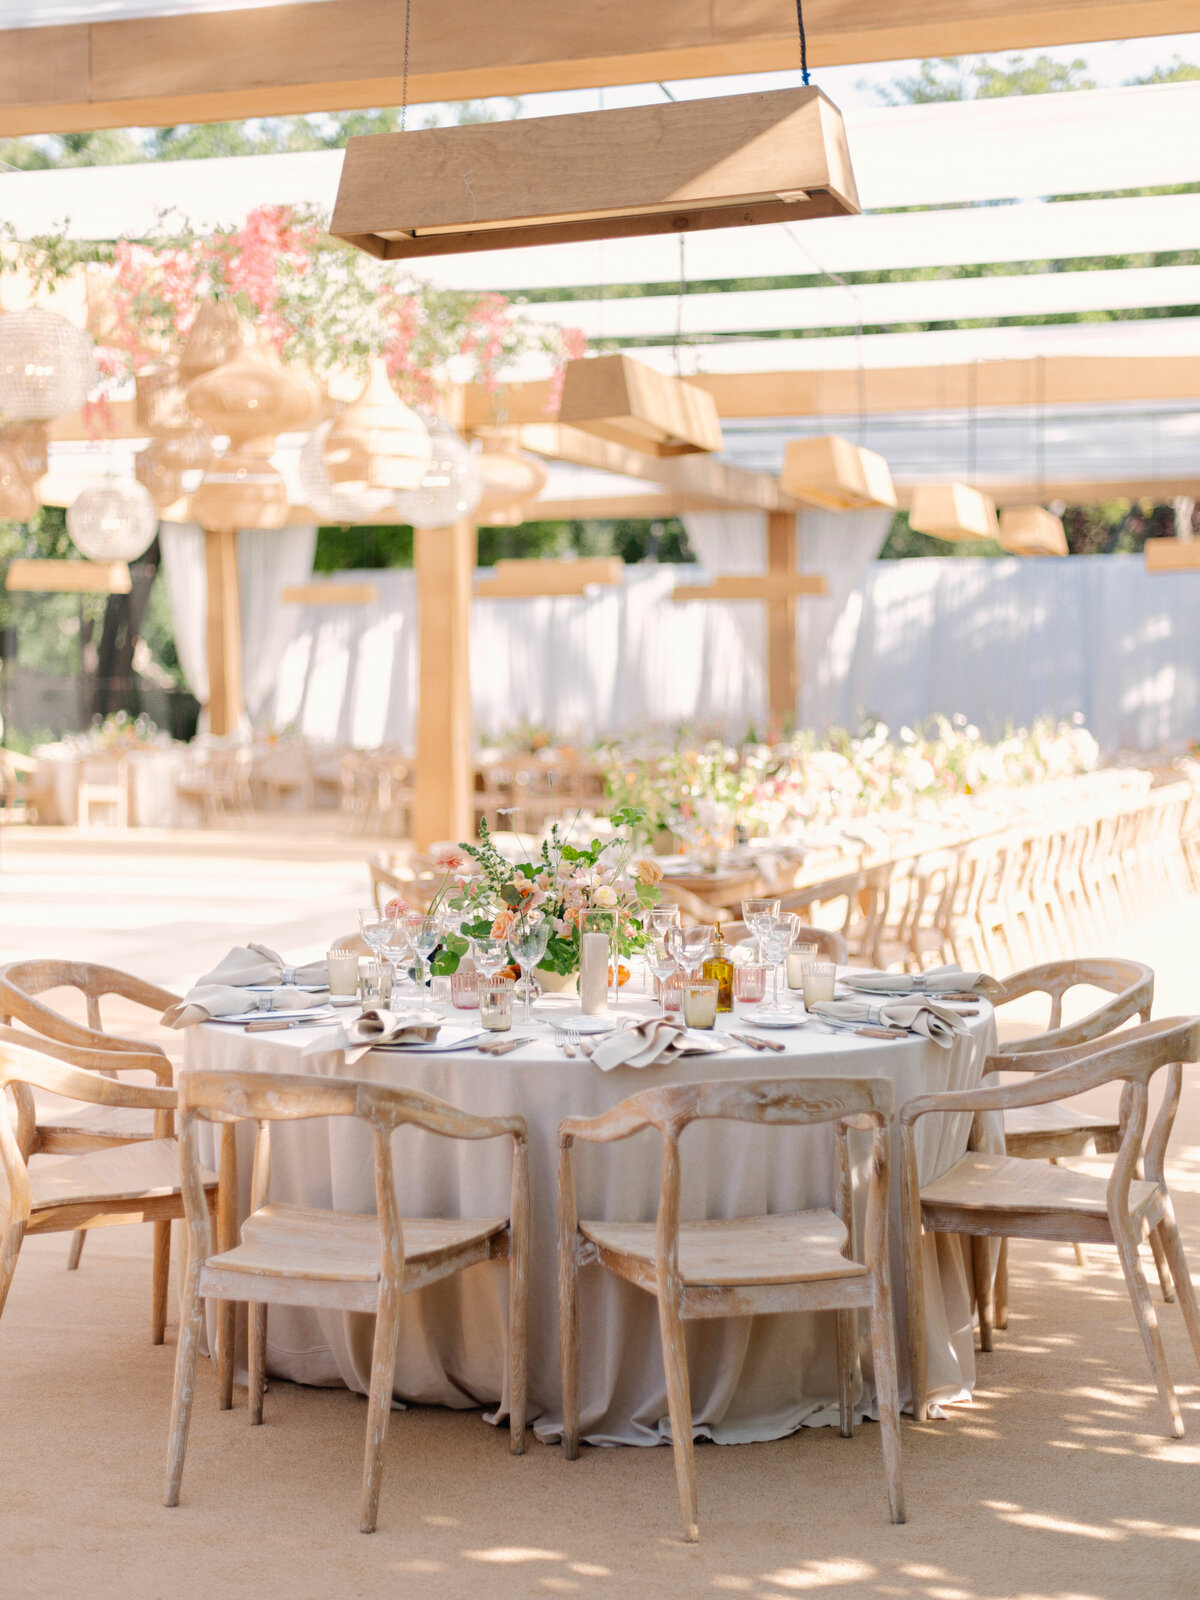 Private Estate Wedding in Ojai, California - 134